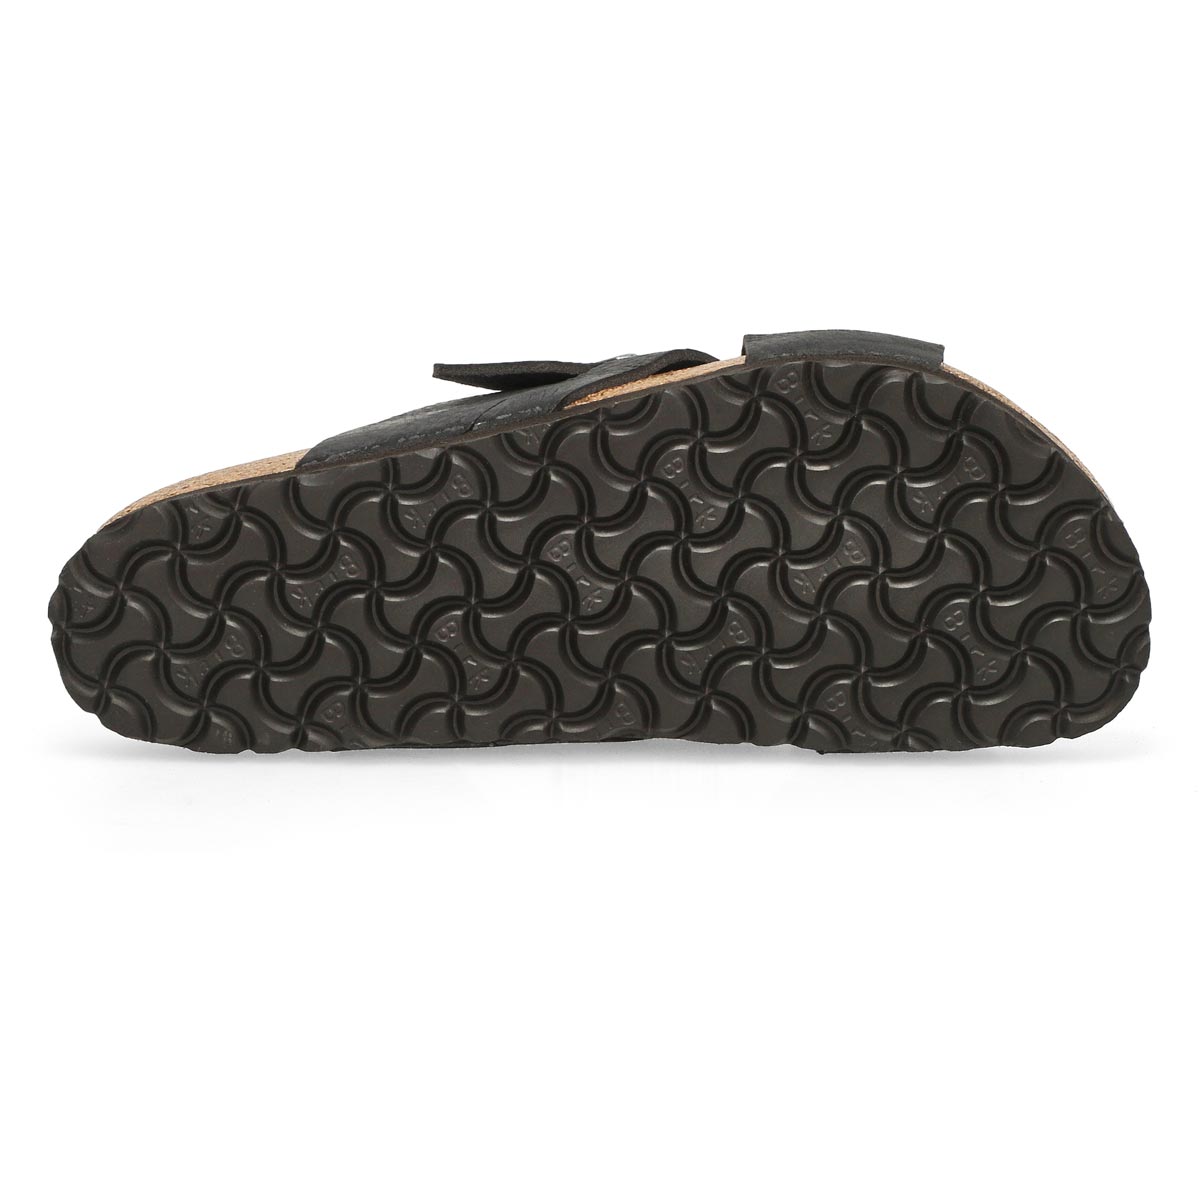 Men's Lugano Oiled Leather Slide Sandal - Black